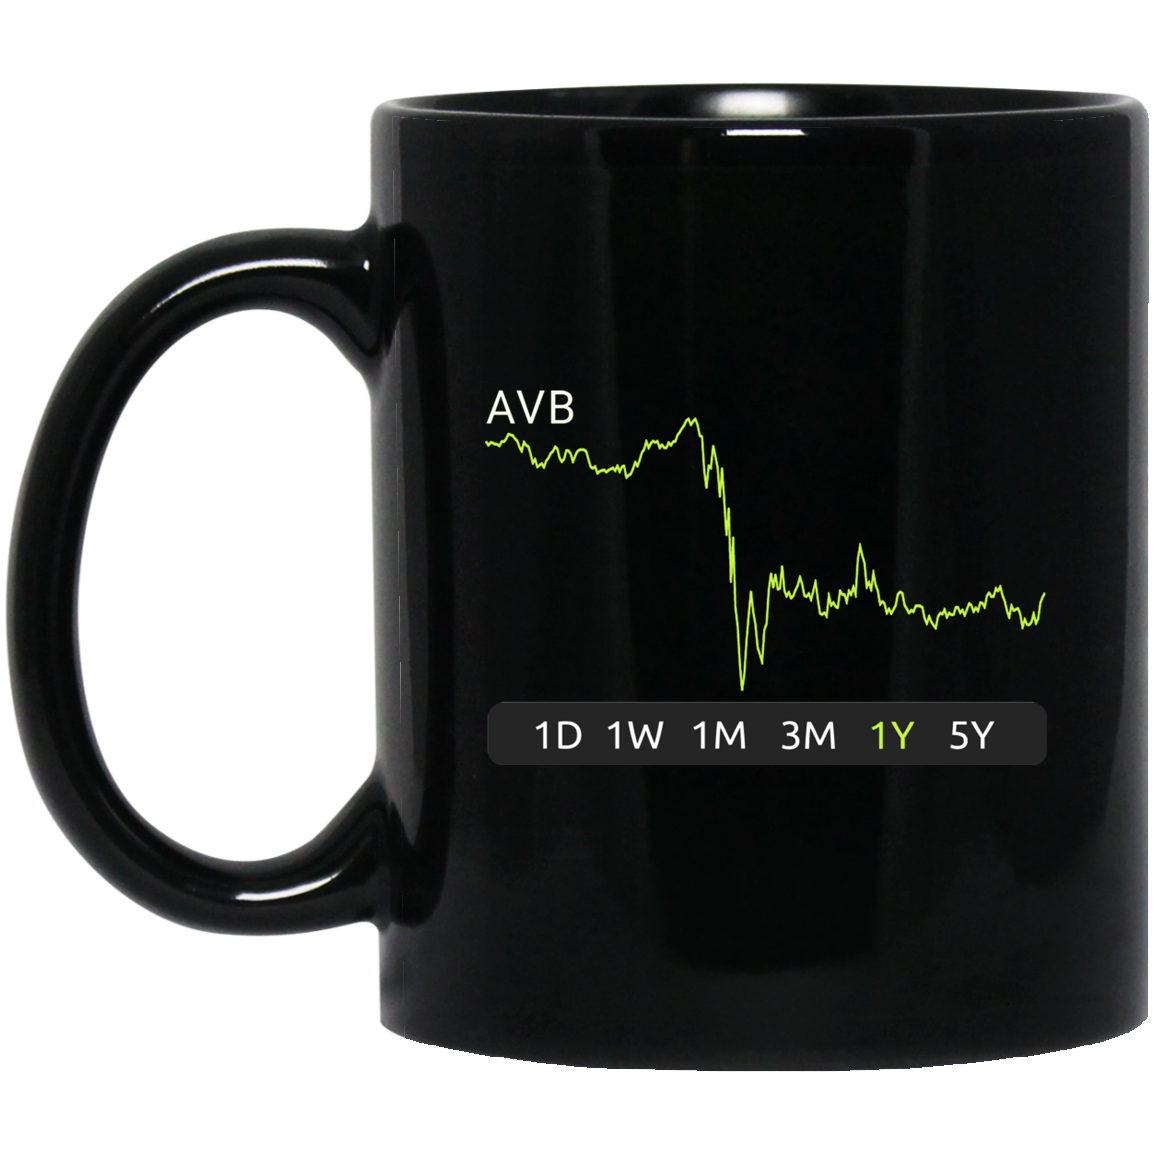 AVB Stock 1y Mug